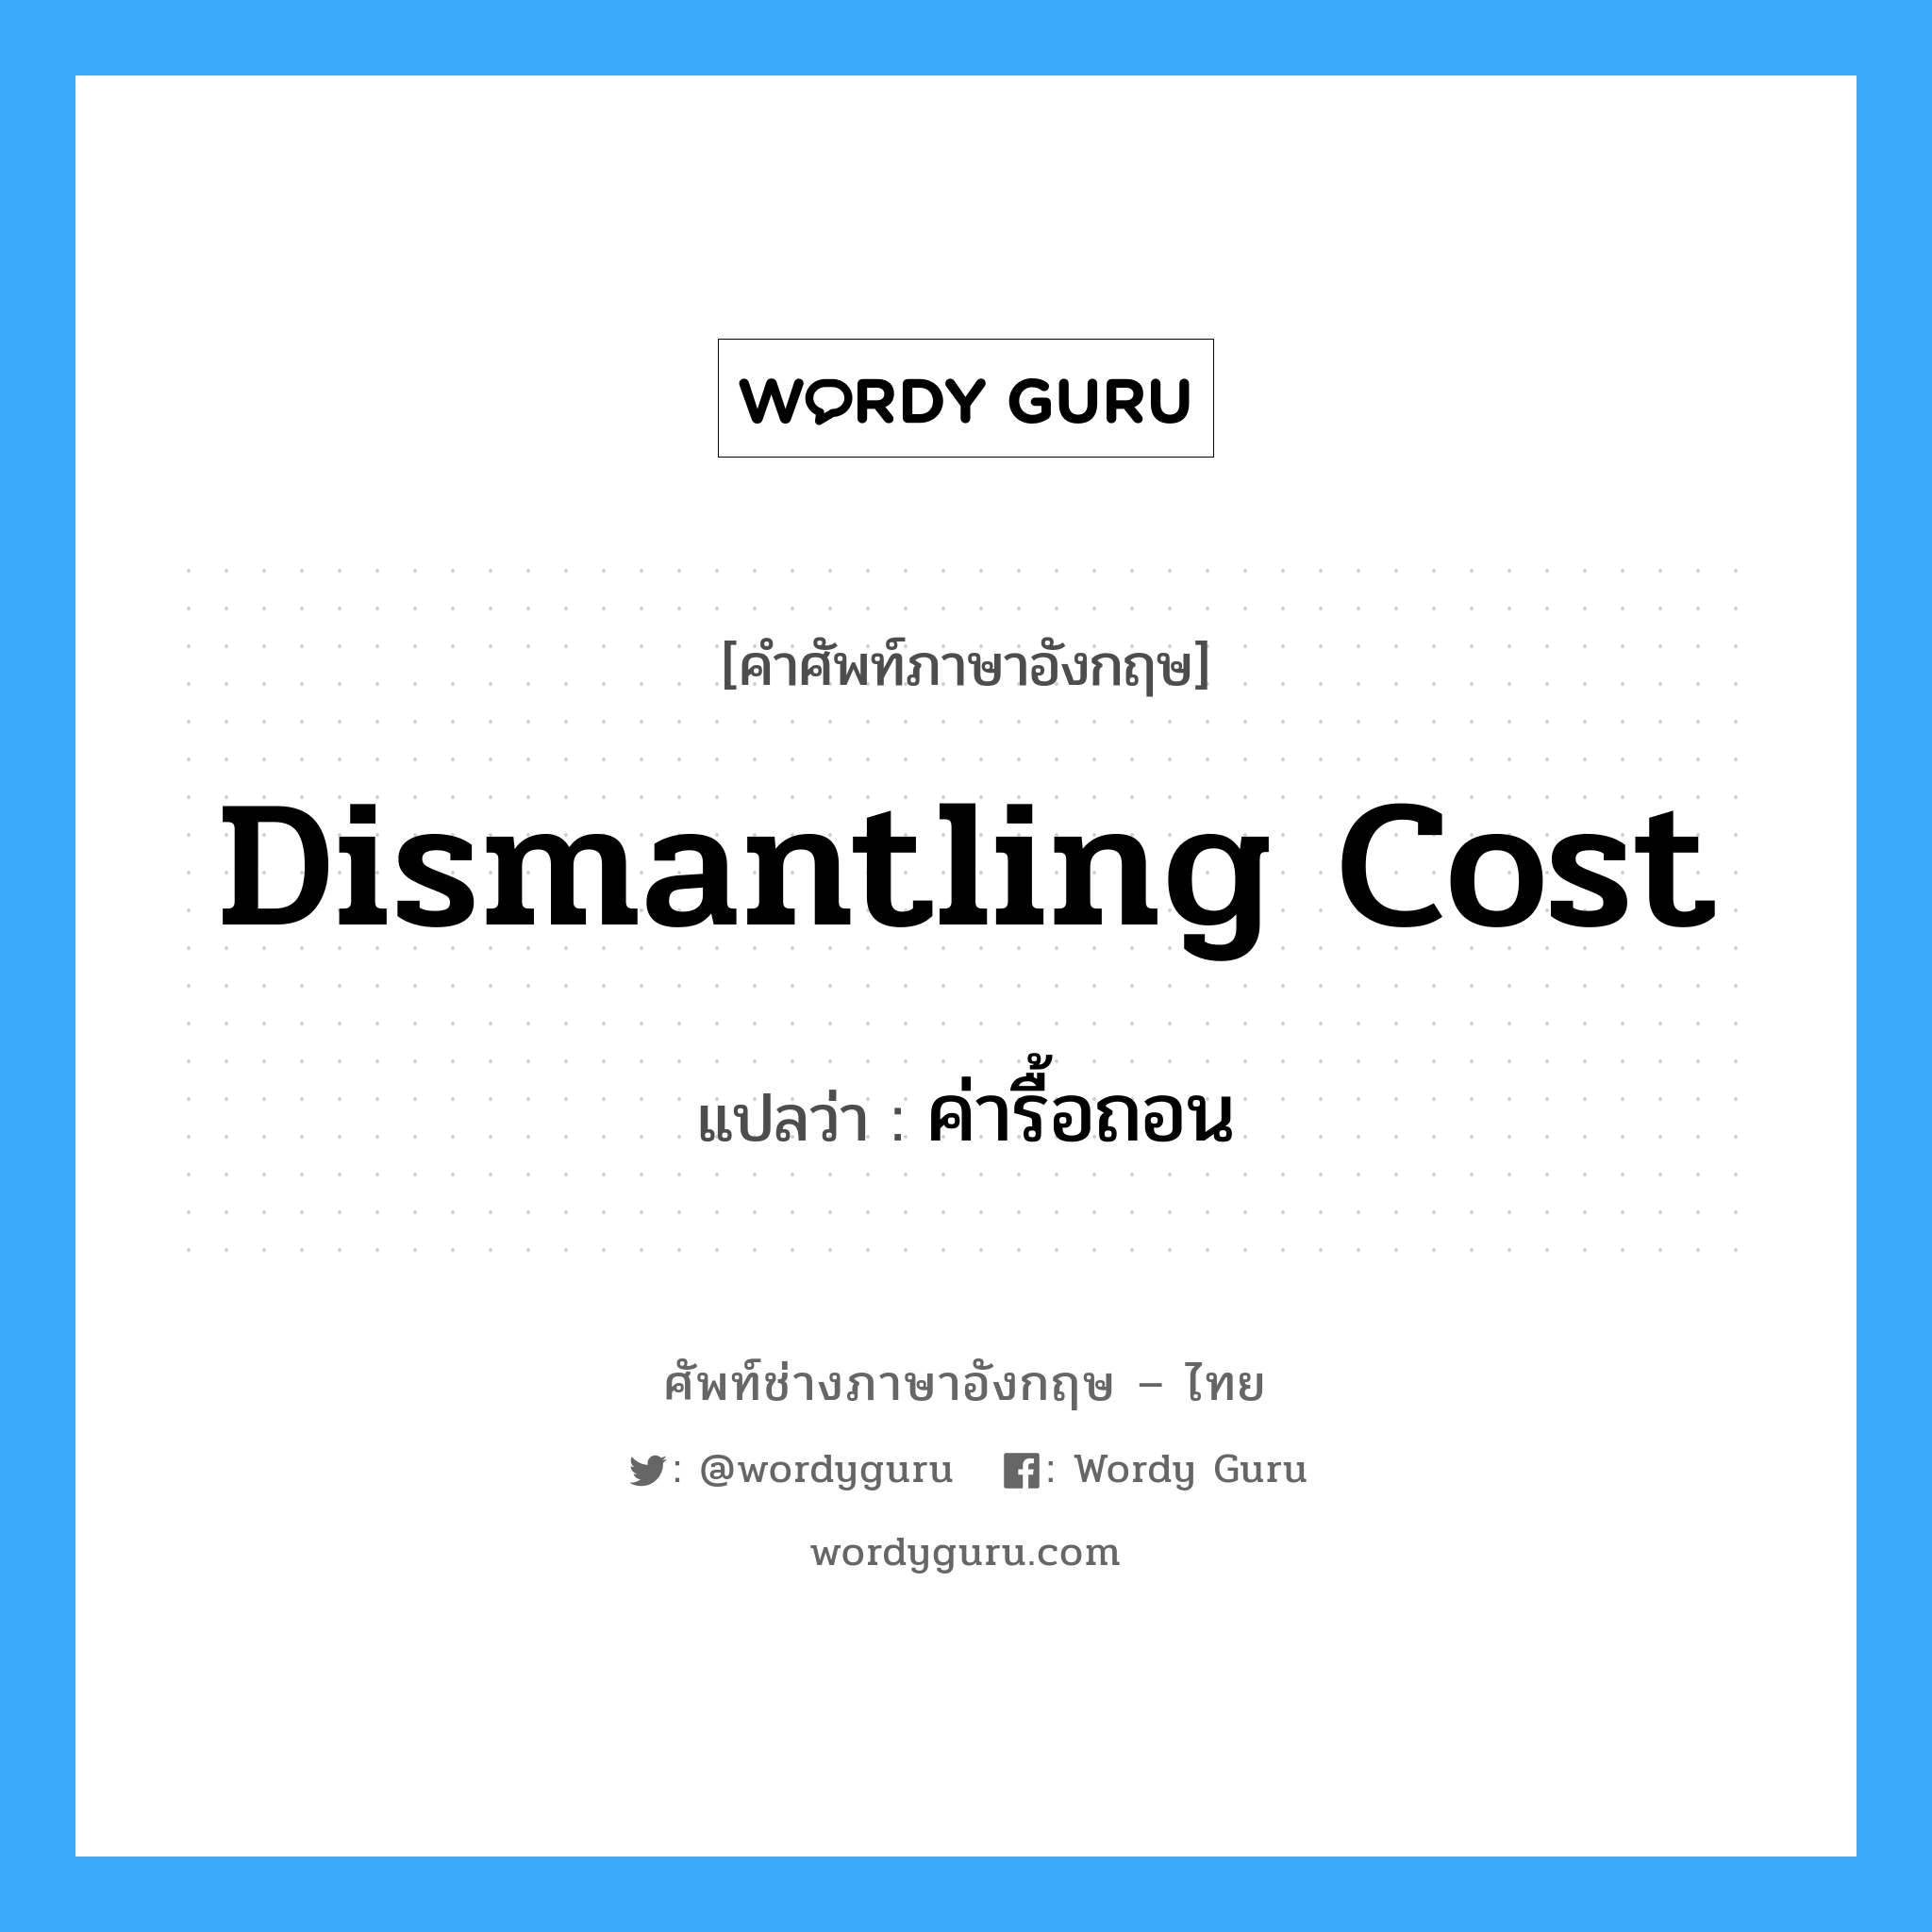 ค่ารื้อถอน ภาษาอังกฤษ?, คำศัพท์ช่างภาษาอังกฤษ - ไทย ค่ารื้อถอน คำศัพท์ภาษาอังกฤษ ค่ารื้อถอน แปลว่า dismantling cost